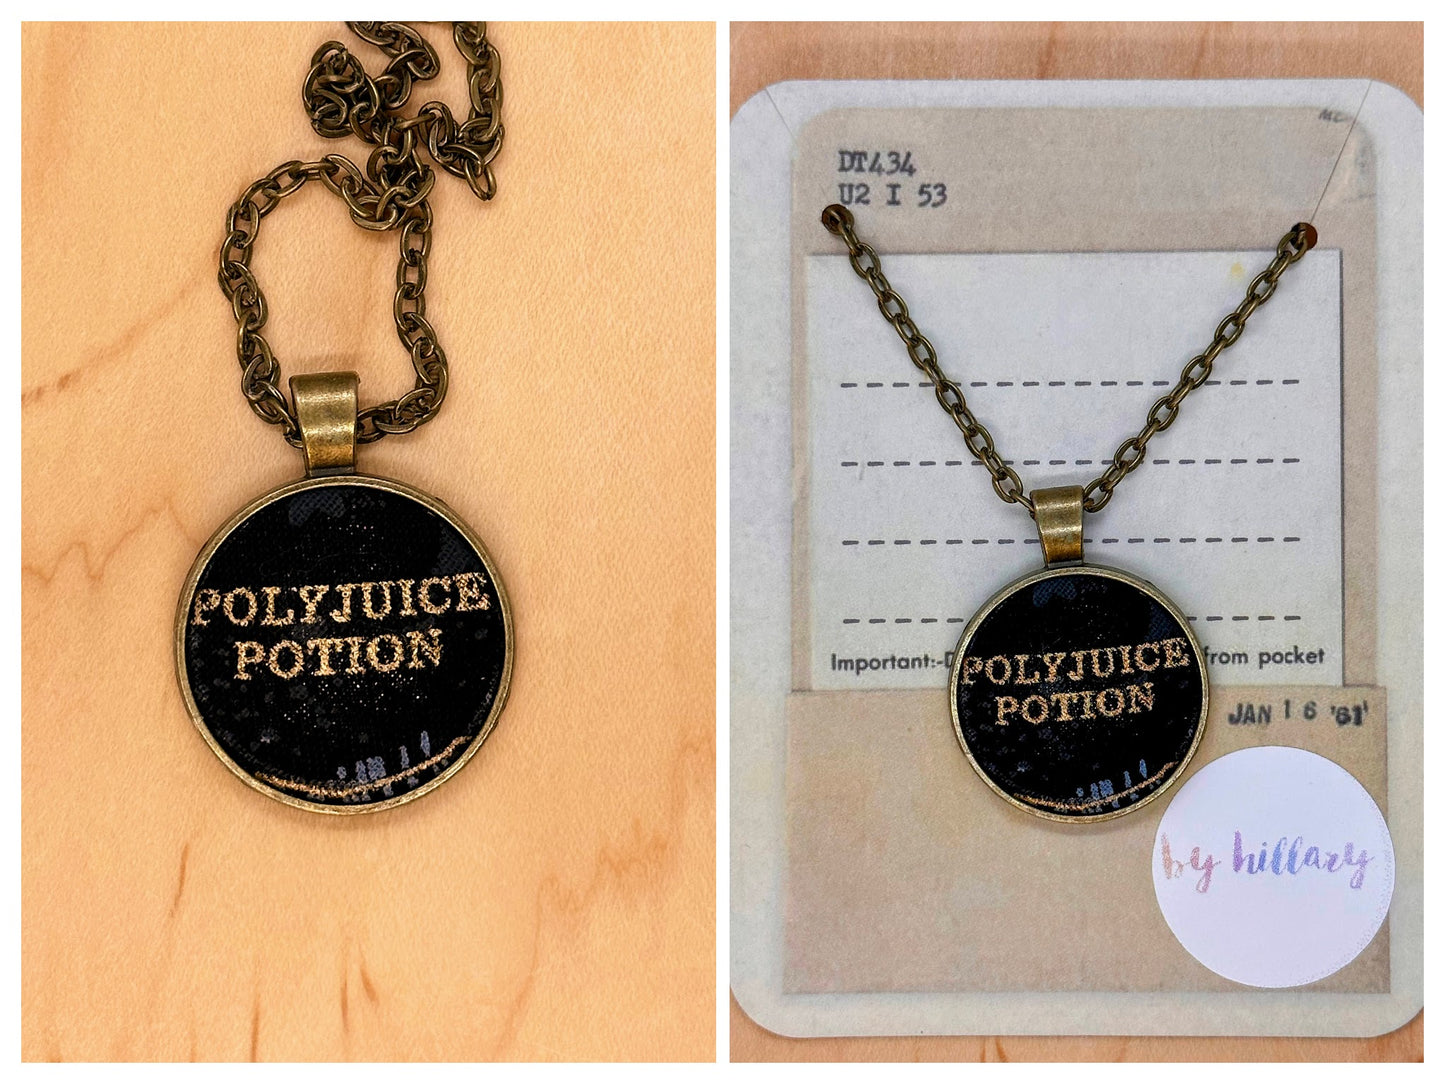 Polyjuice potion necklace